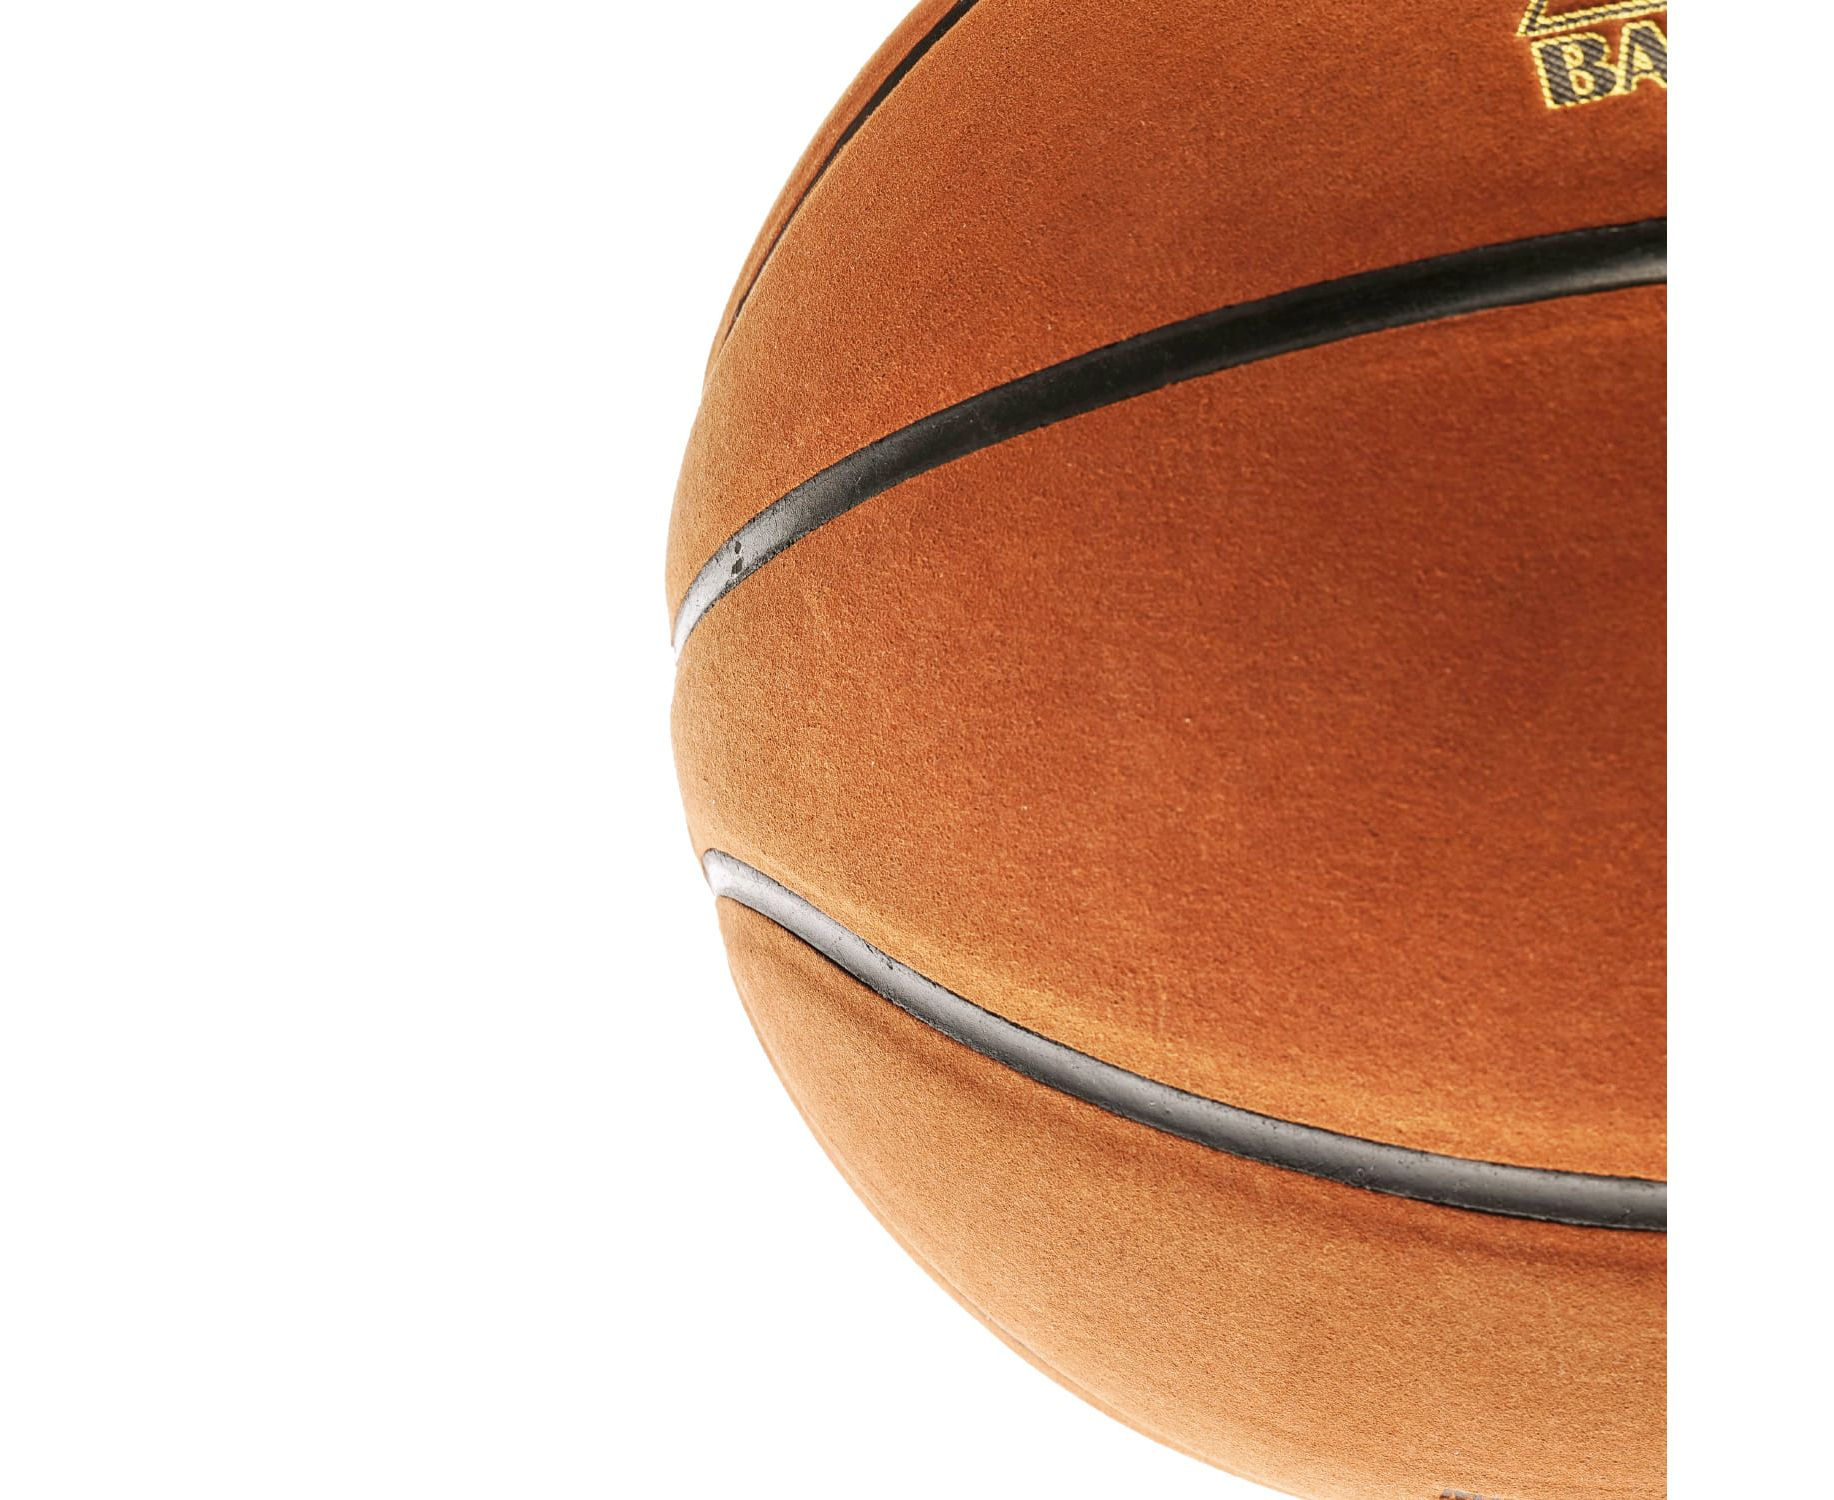 Баскетбольный мяч DFC Gold Ball7PUB